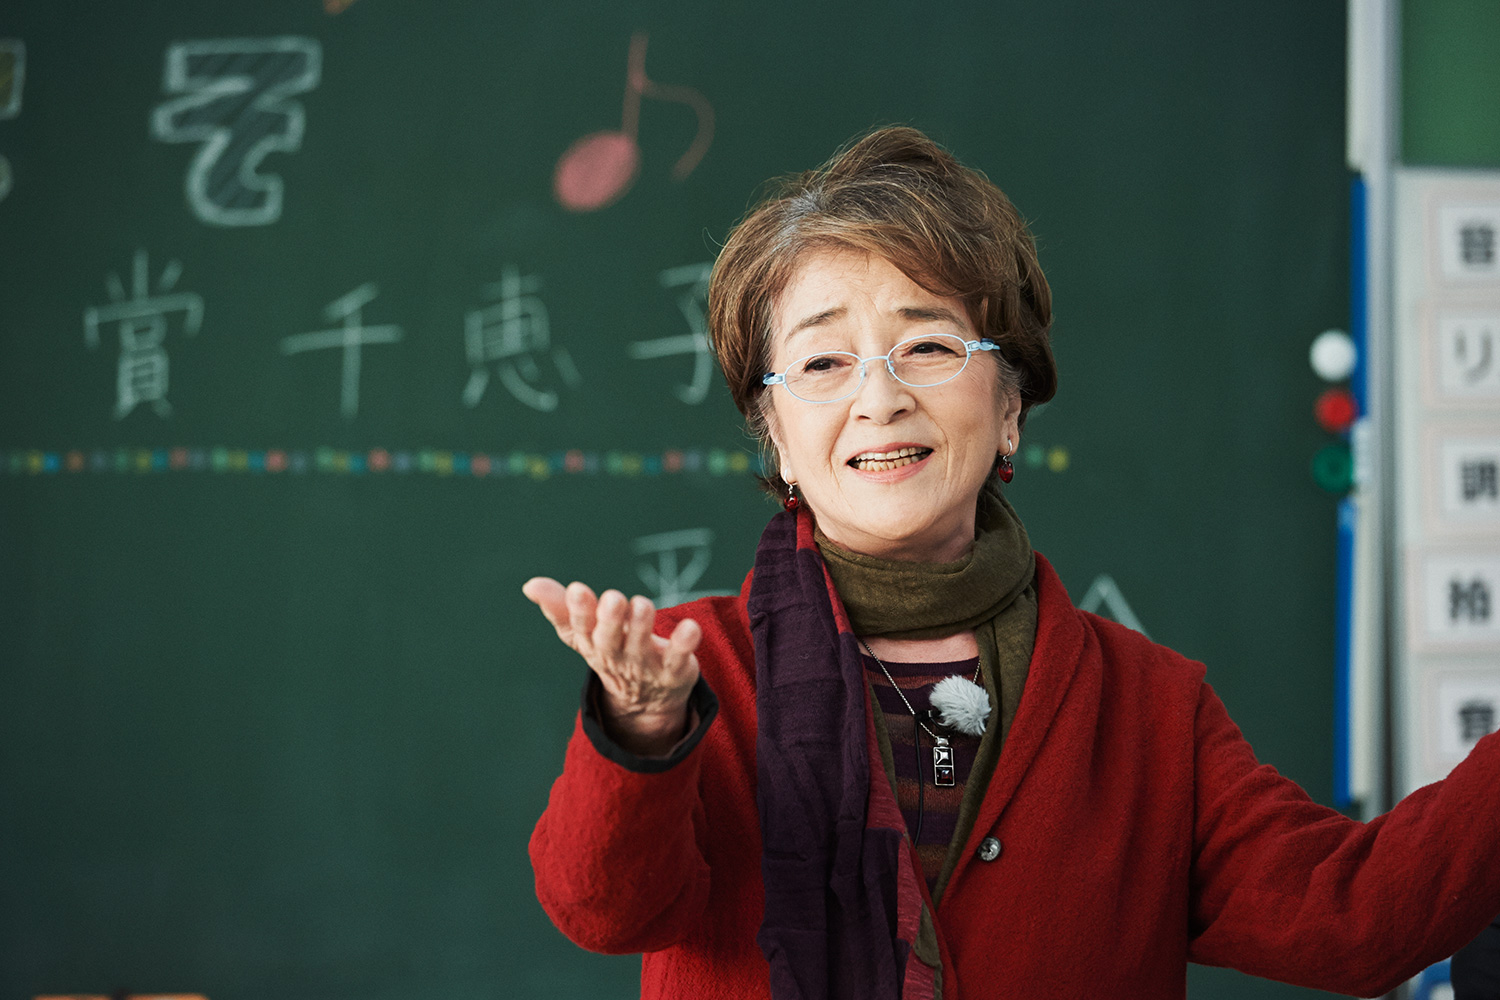 黒板に子供たちが書いた「ようこそ倍賞千恵子さん」のメッセージの前で歌う倍賞さん